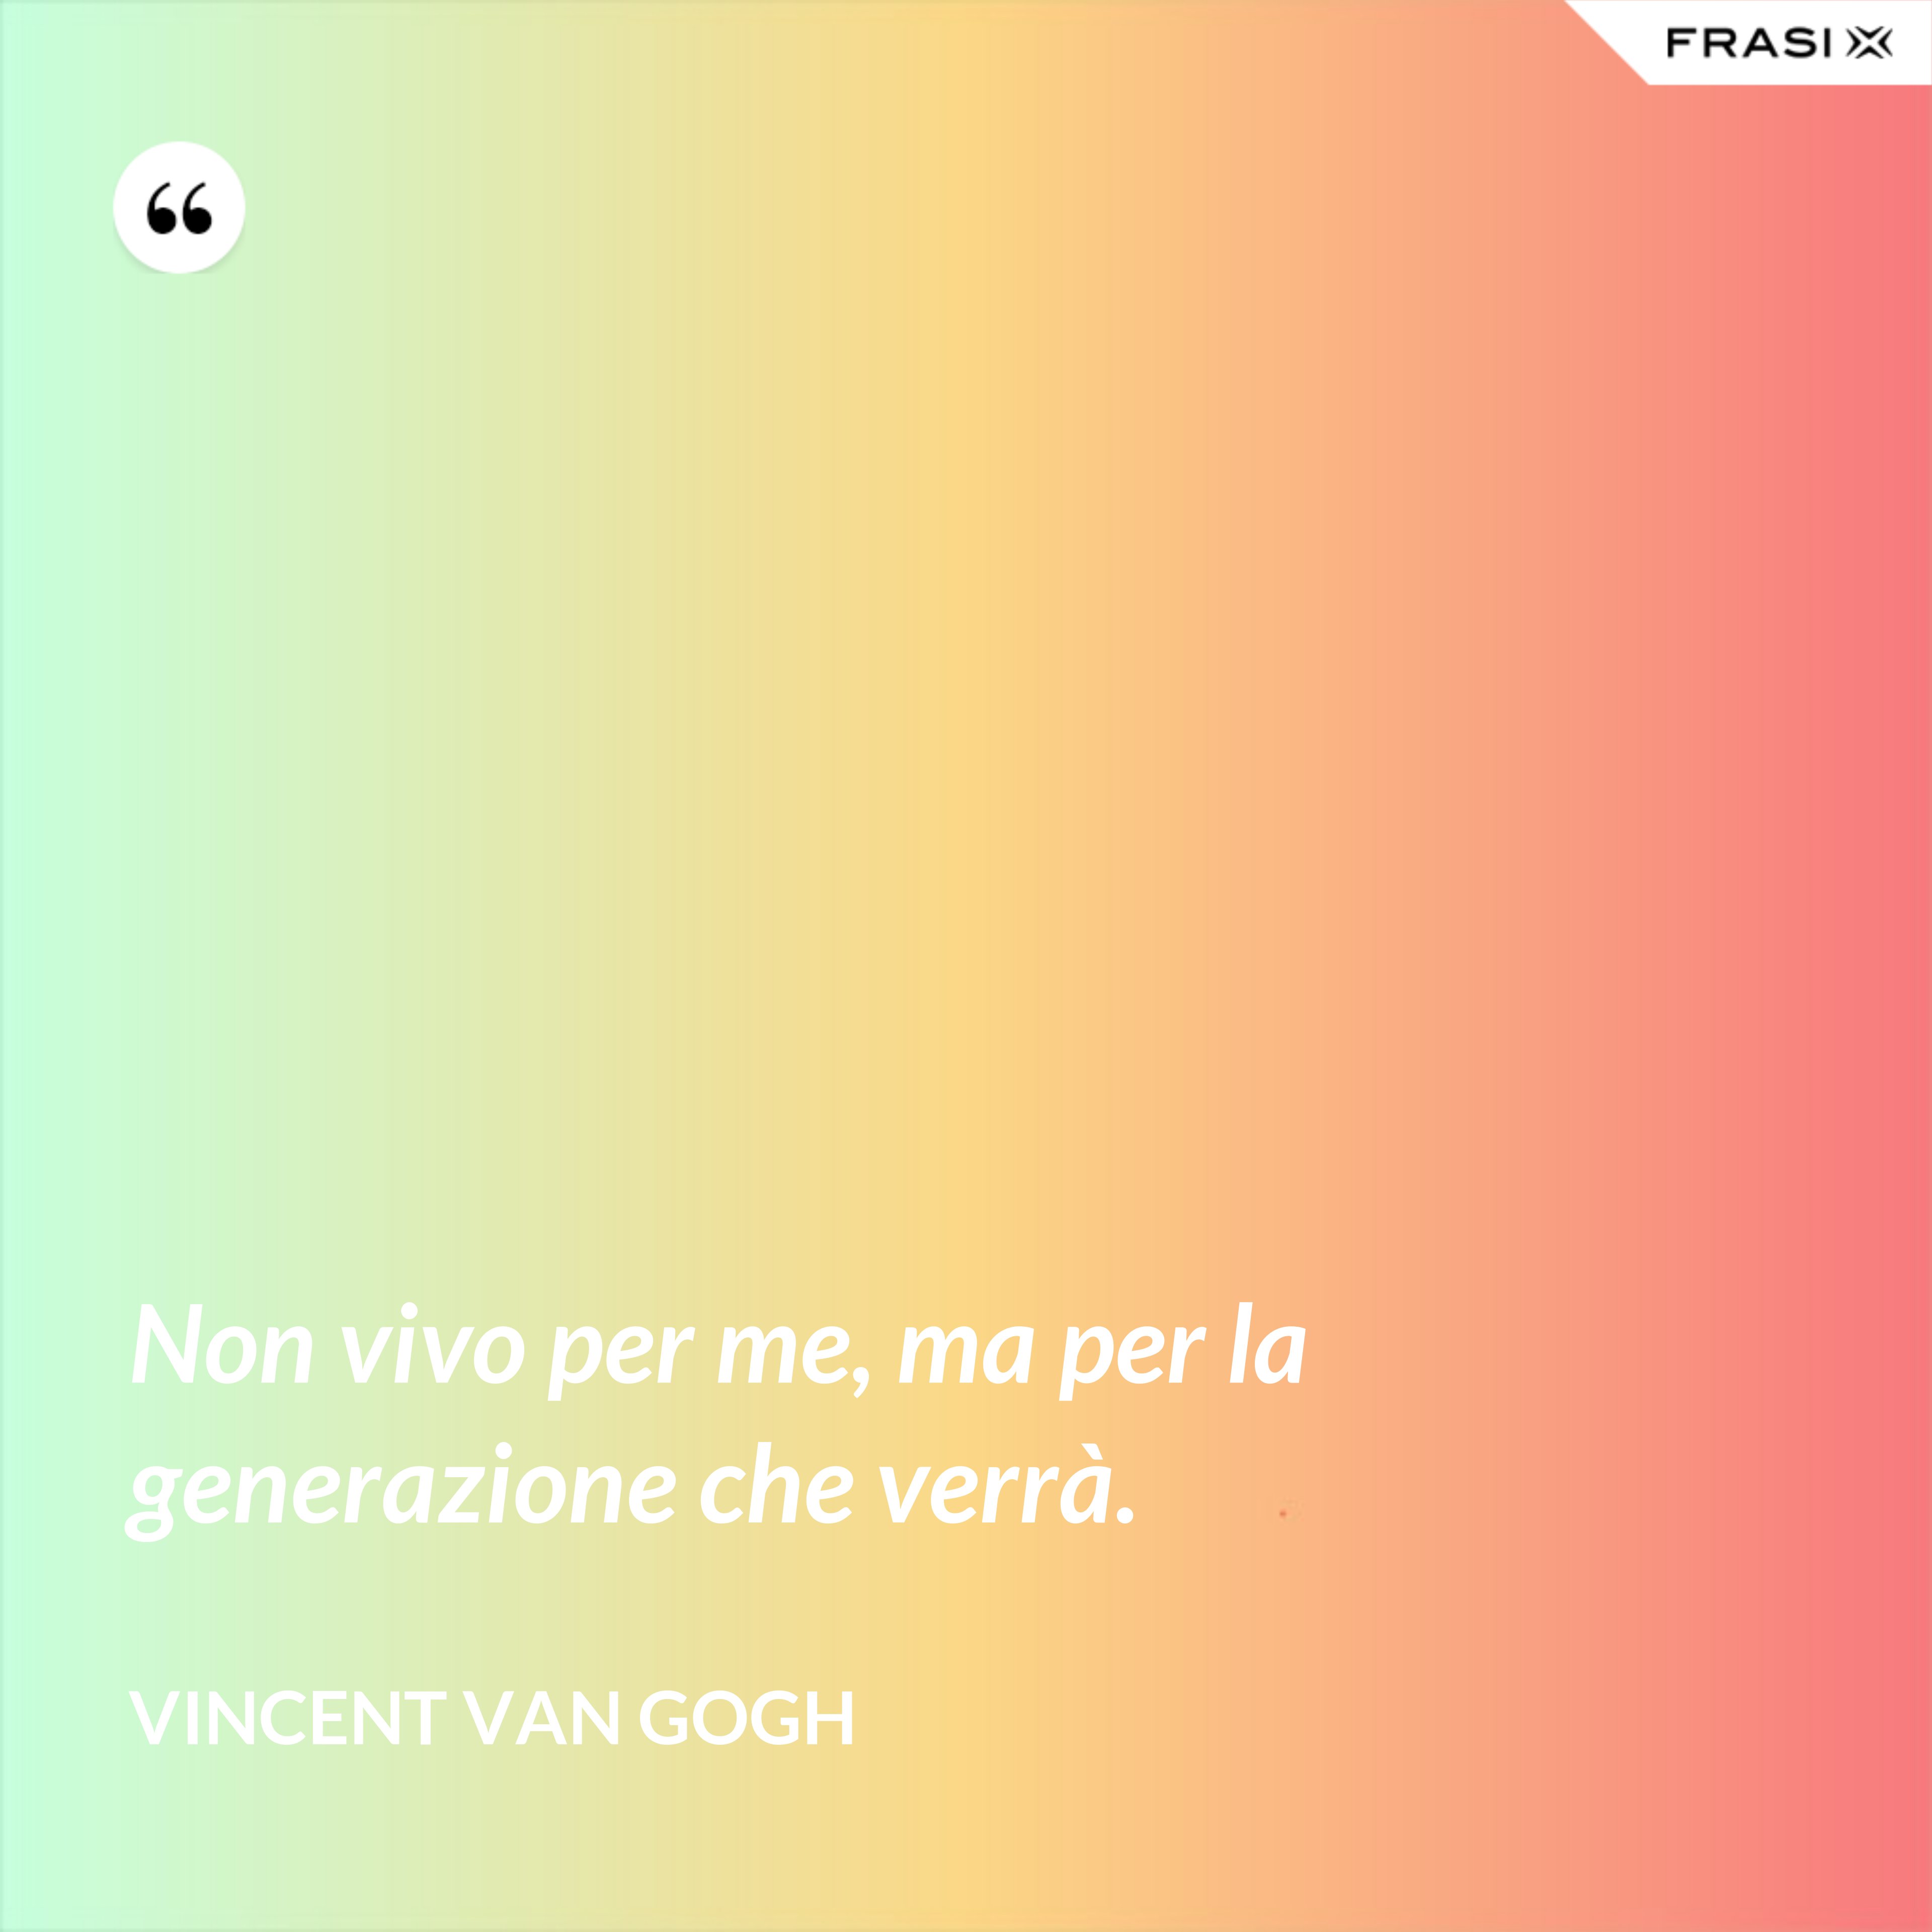 Non vivo per me, ma per la generazione che verrà. - Vincent Van Gogh